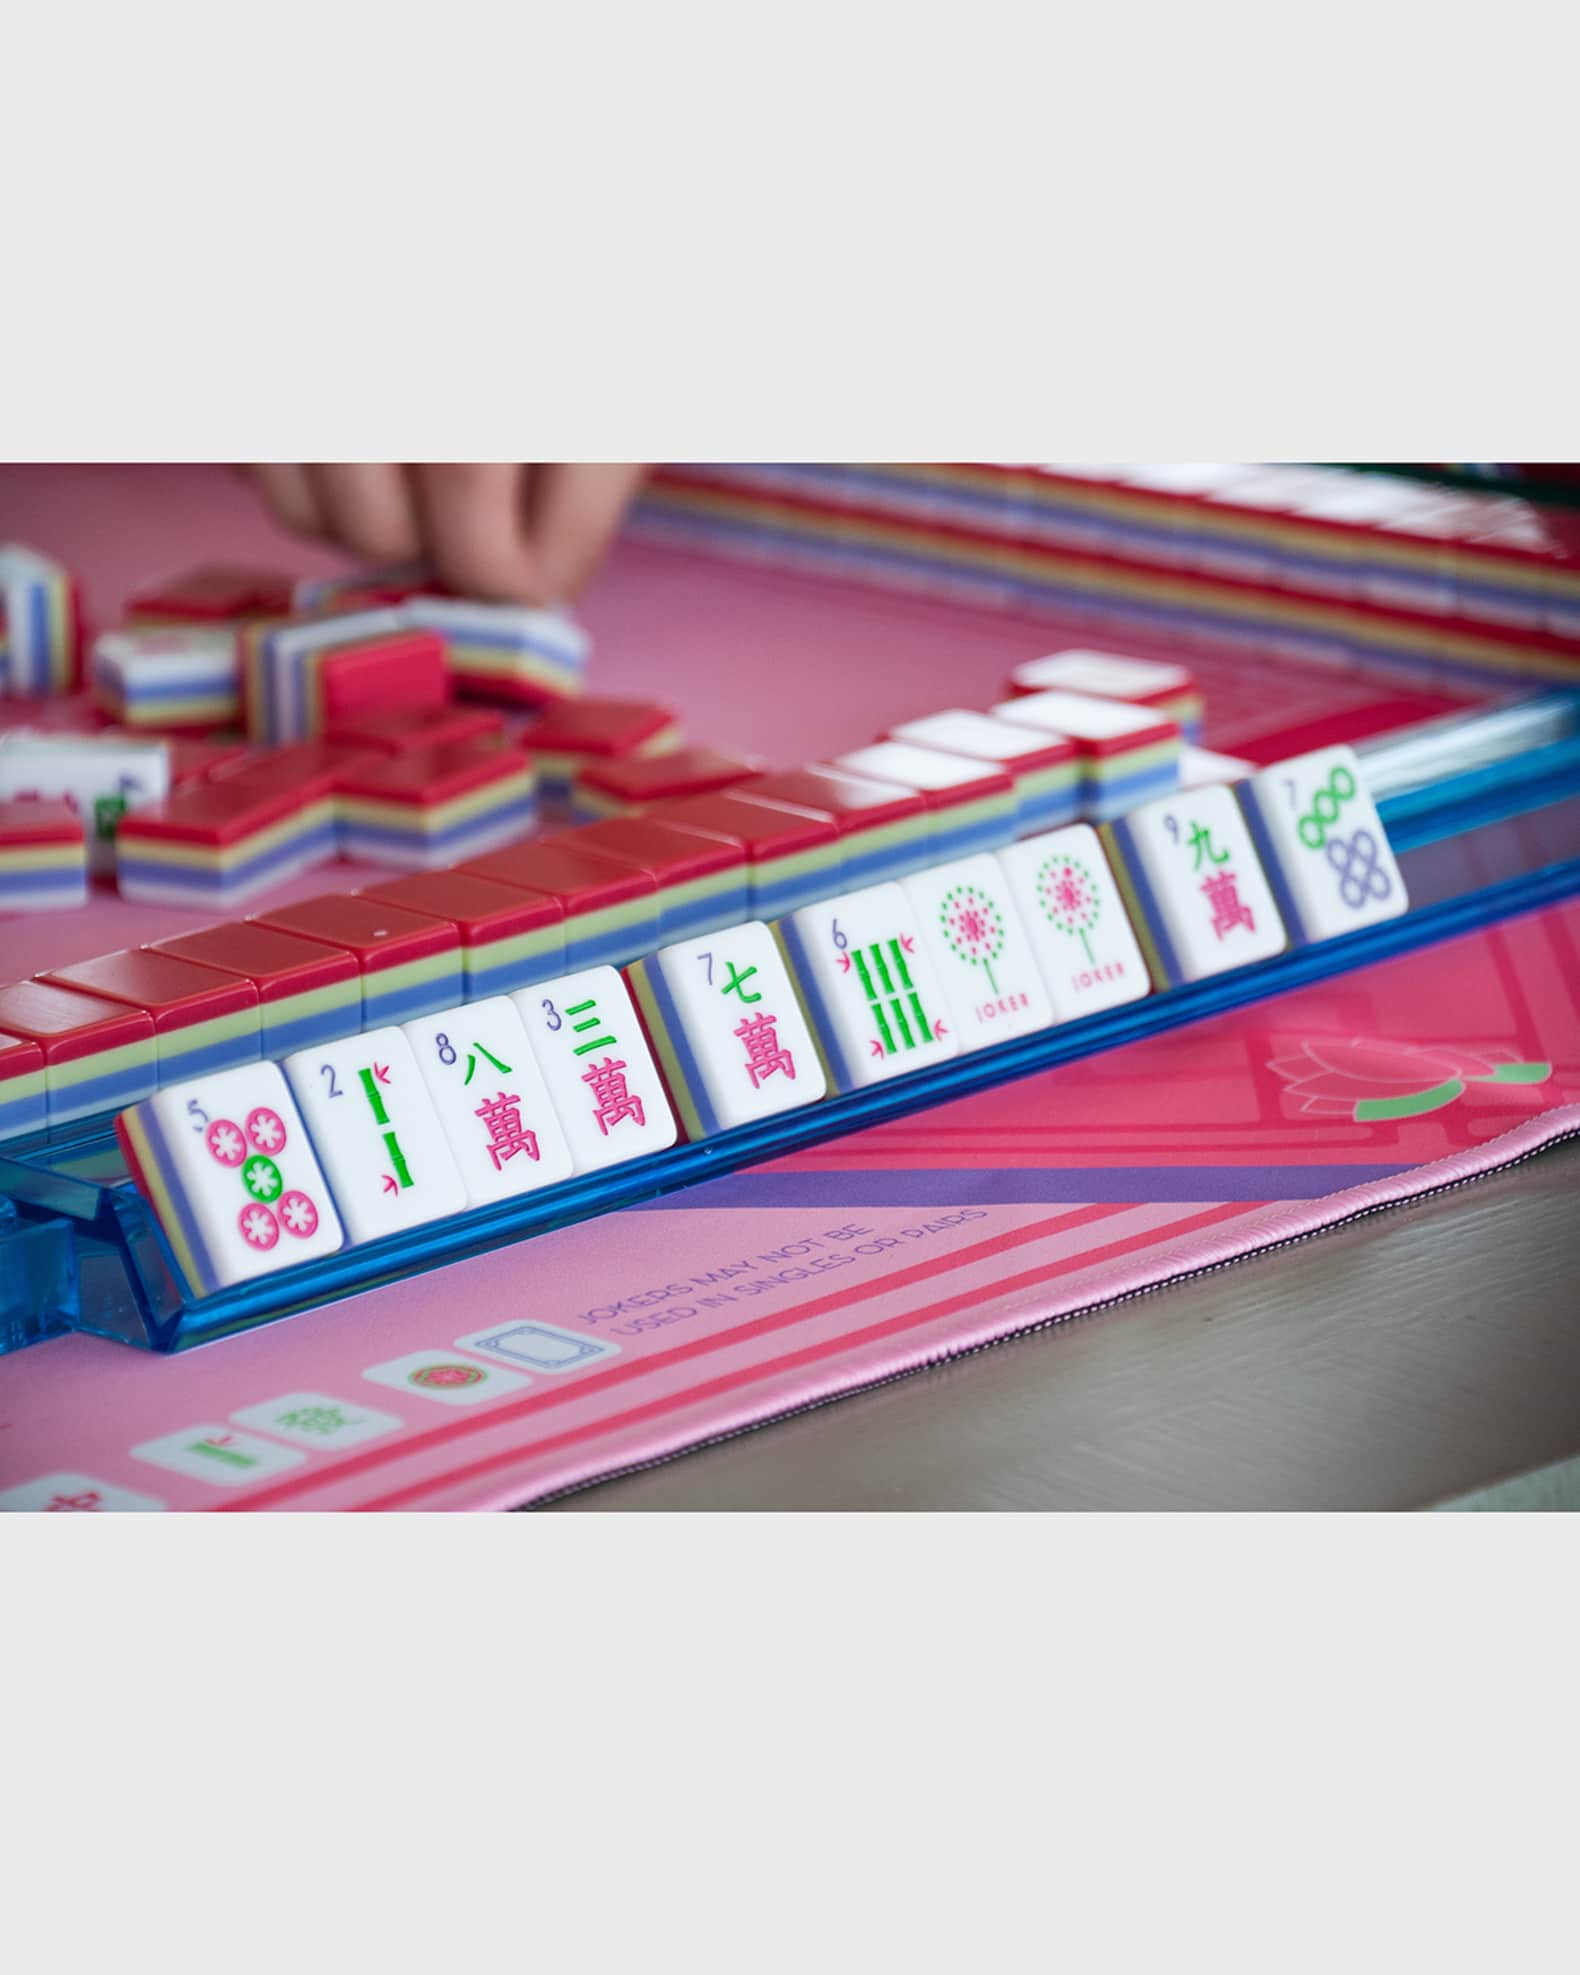 Mahjong Spring Tiles  Modern American Mahjong Tiles – Oh My Mahjong